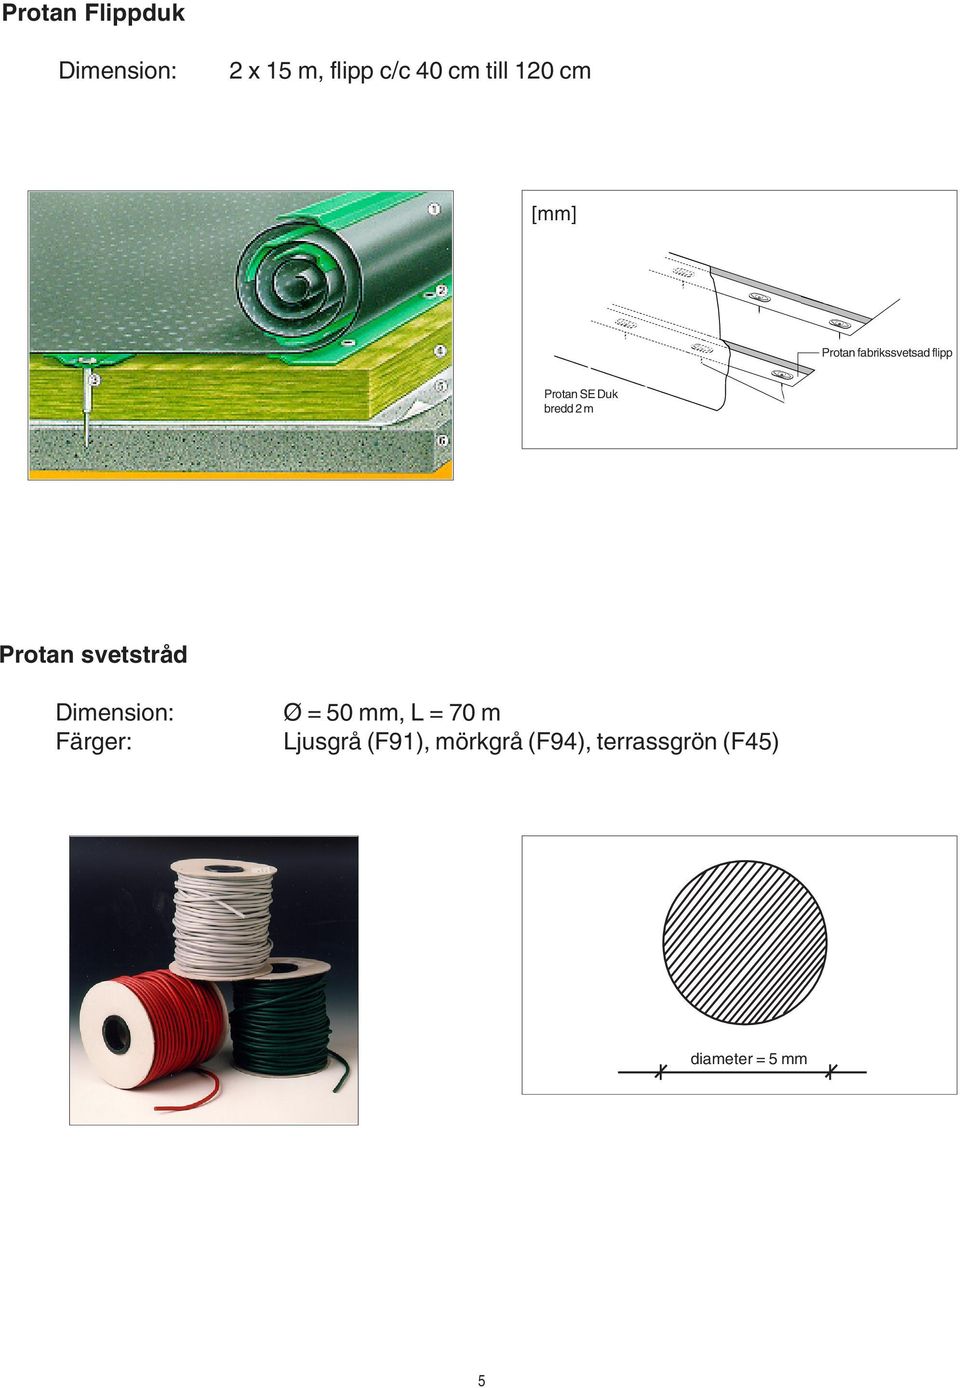 Membrane 2M Wide bredd 2 m Fastener Plates and Fasteners at Pre-designed Centres Protan